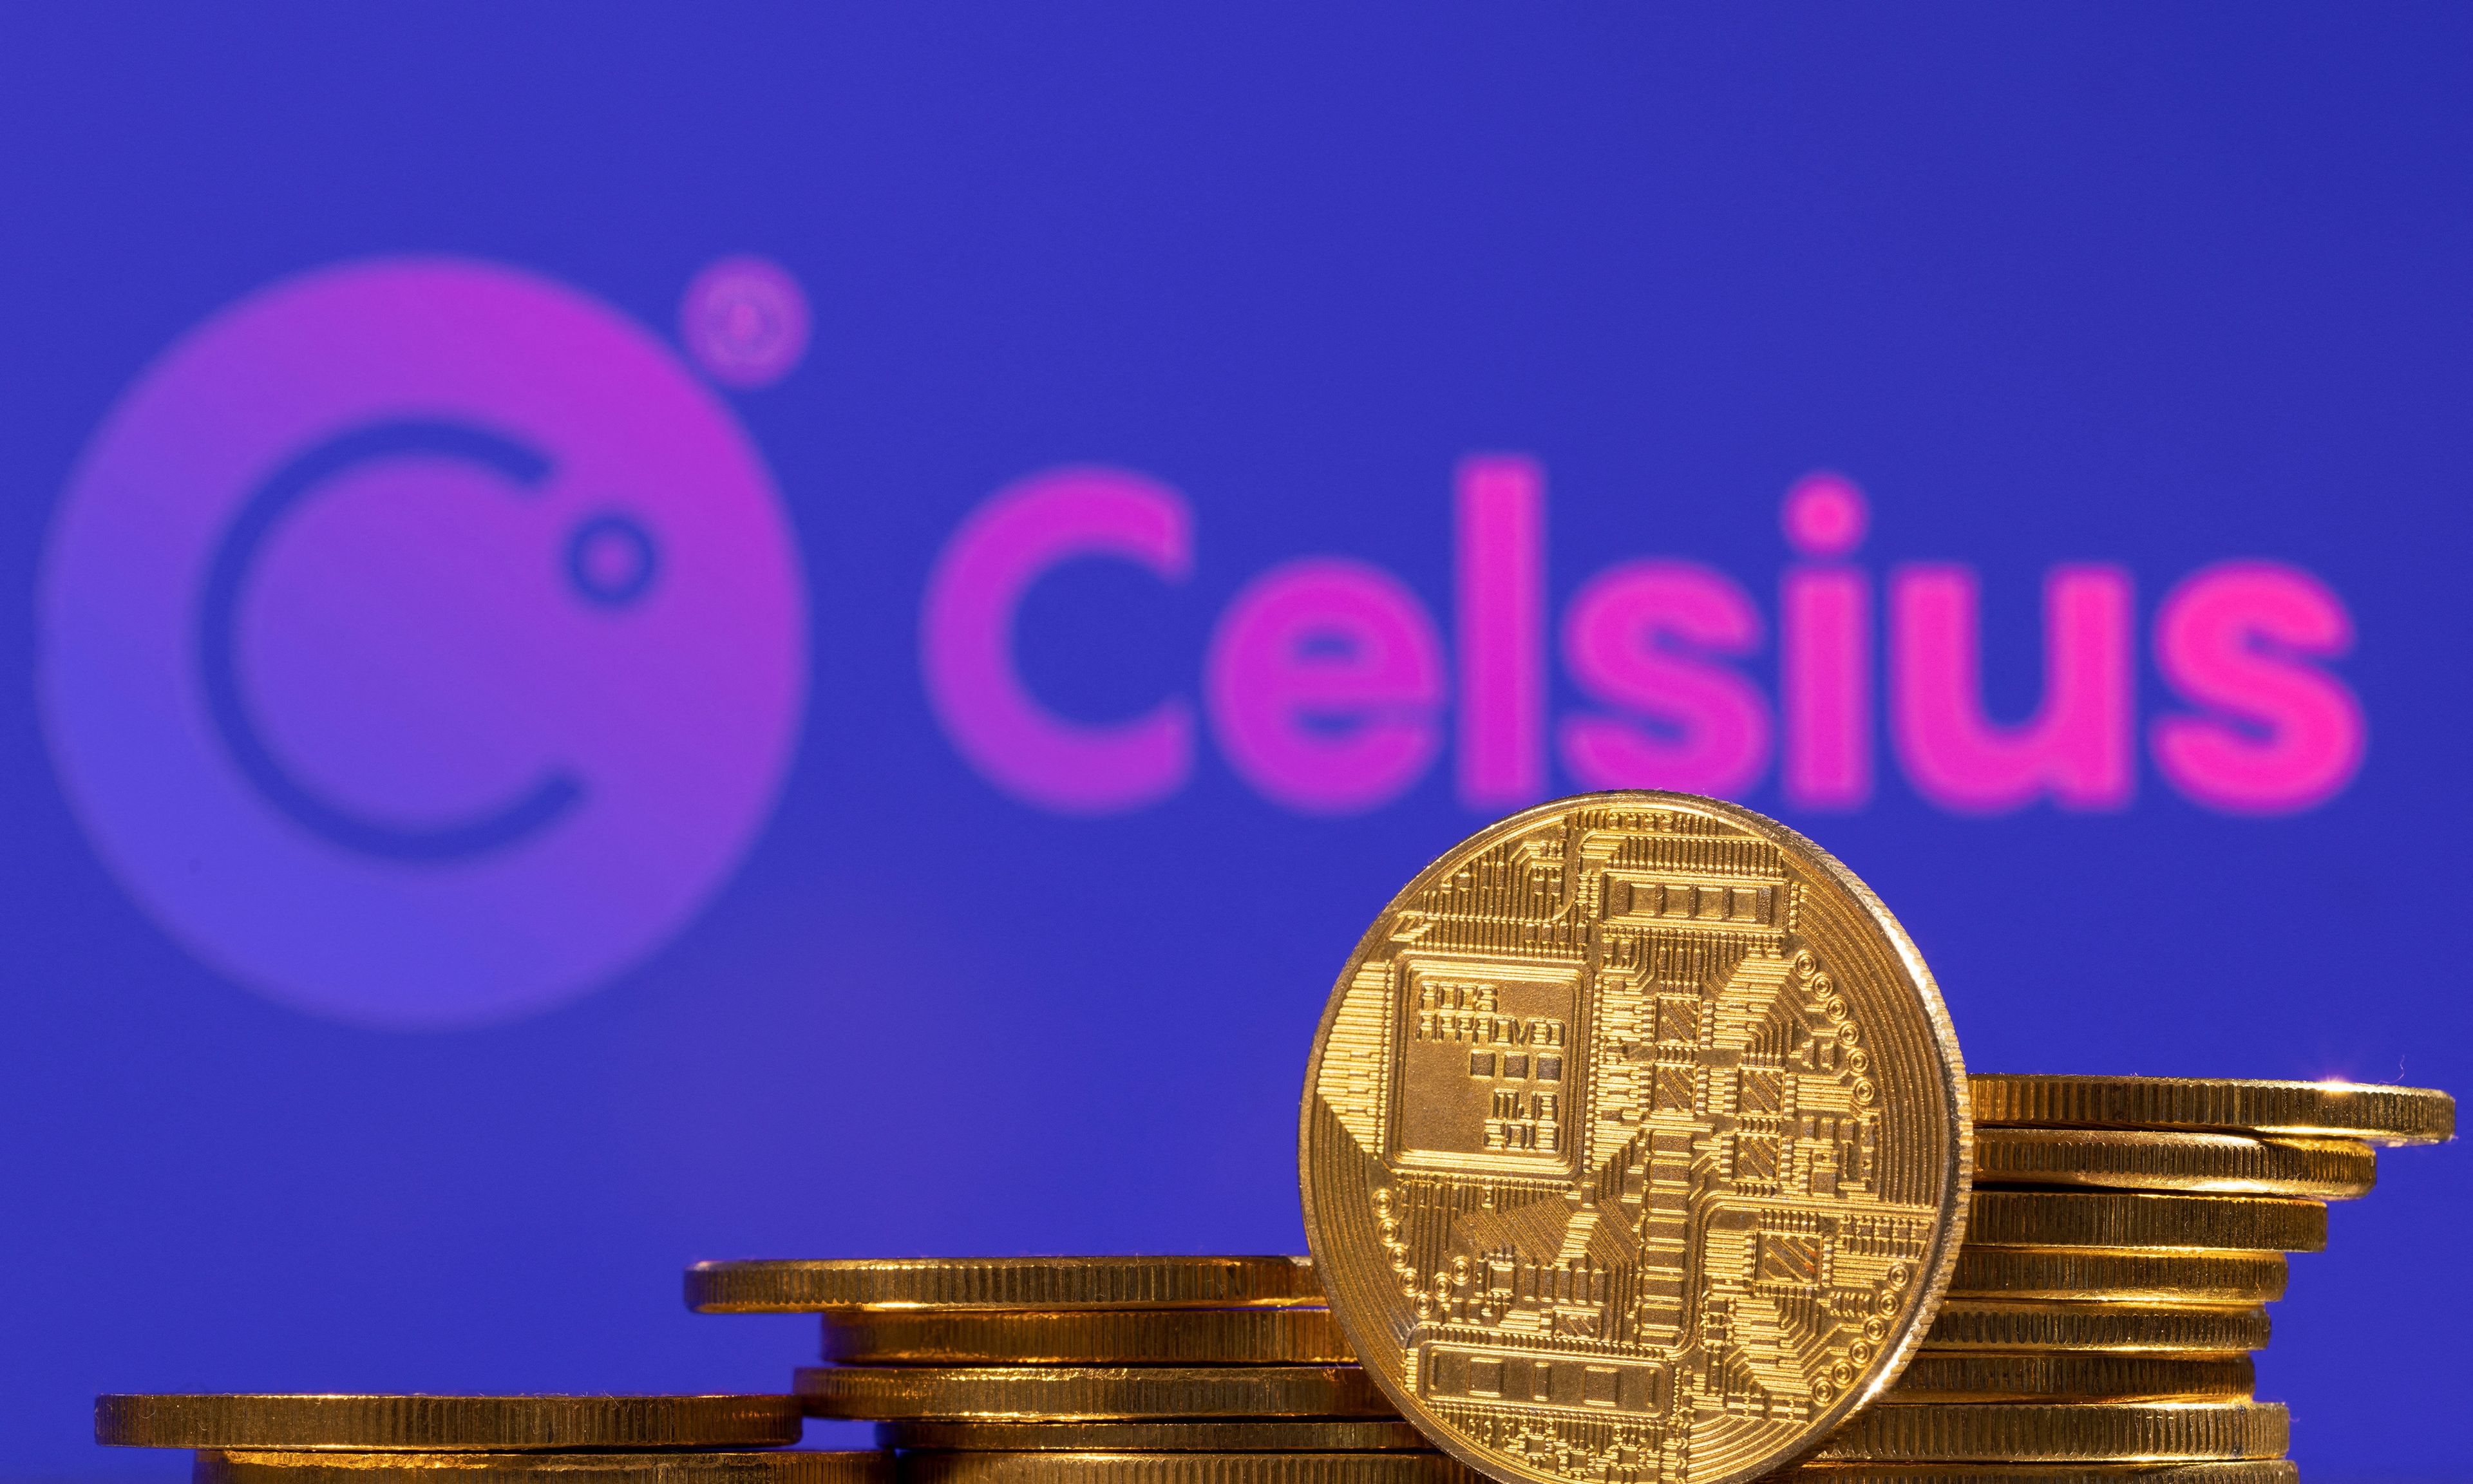 Ilustración con el logo de Celsius y varias monedas.